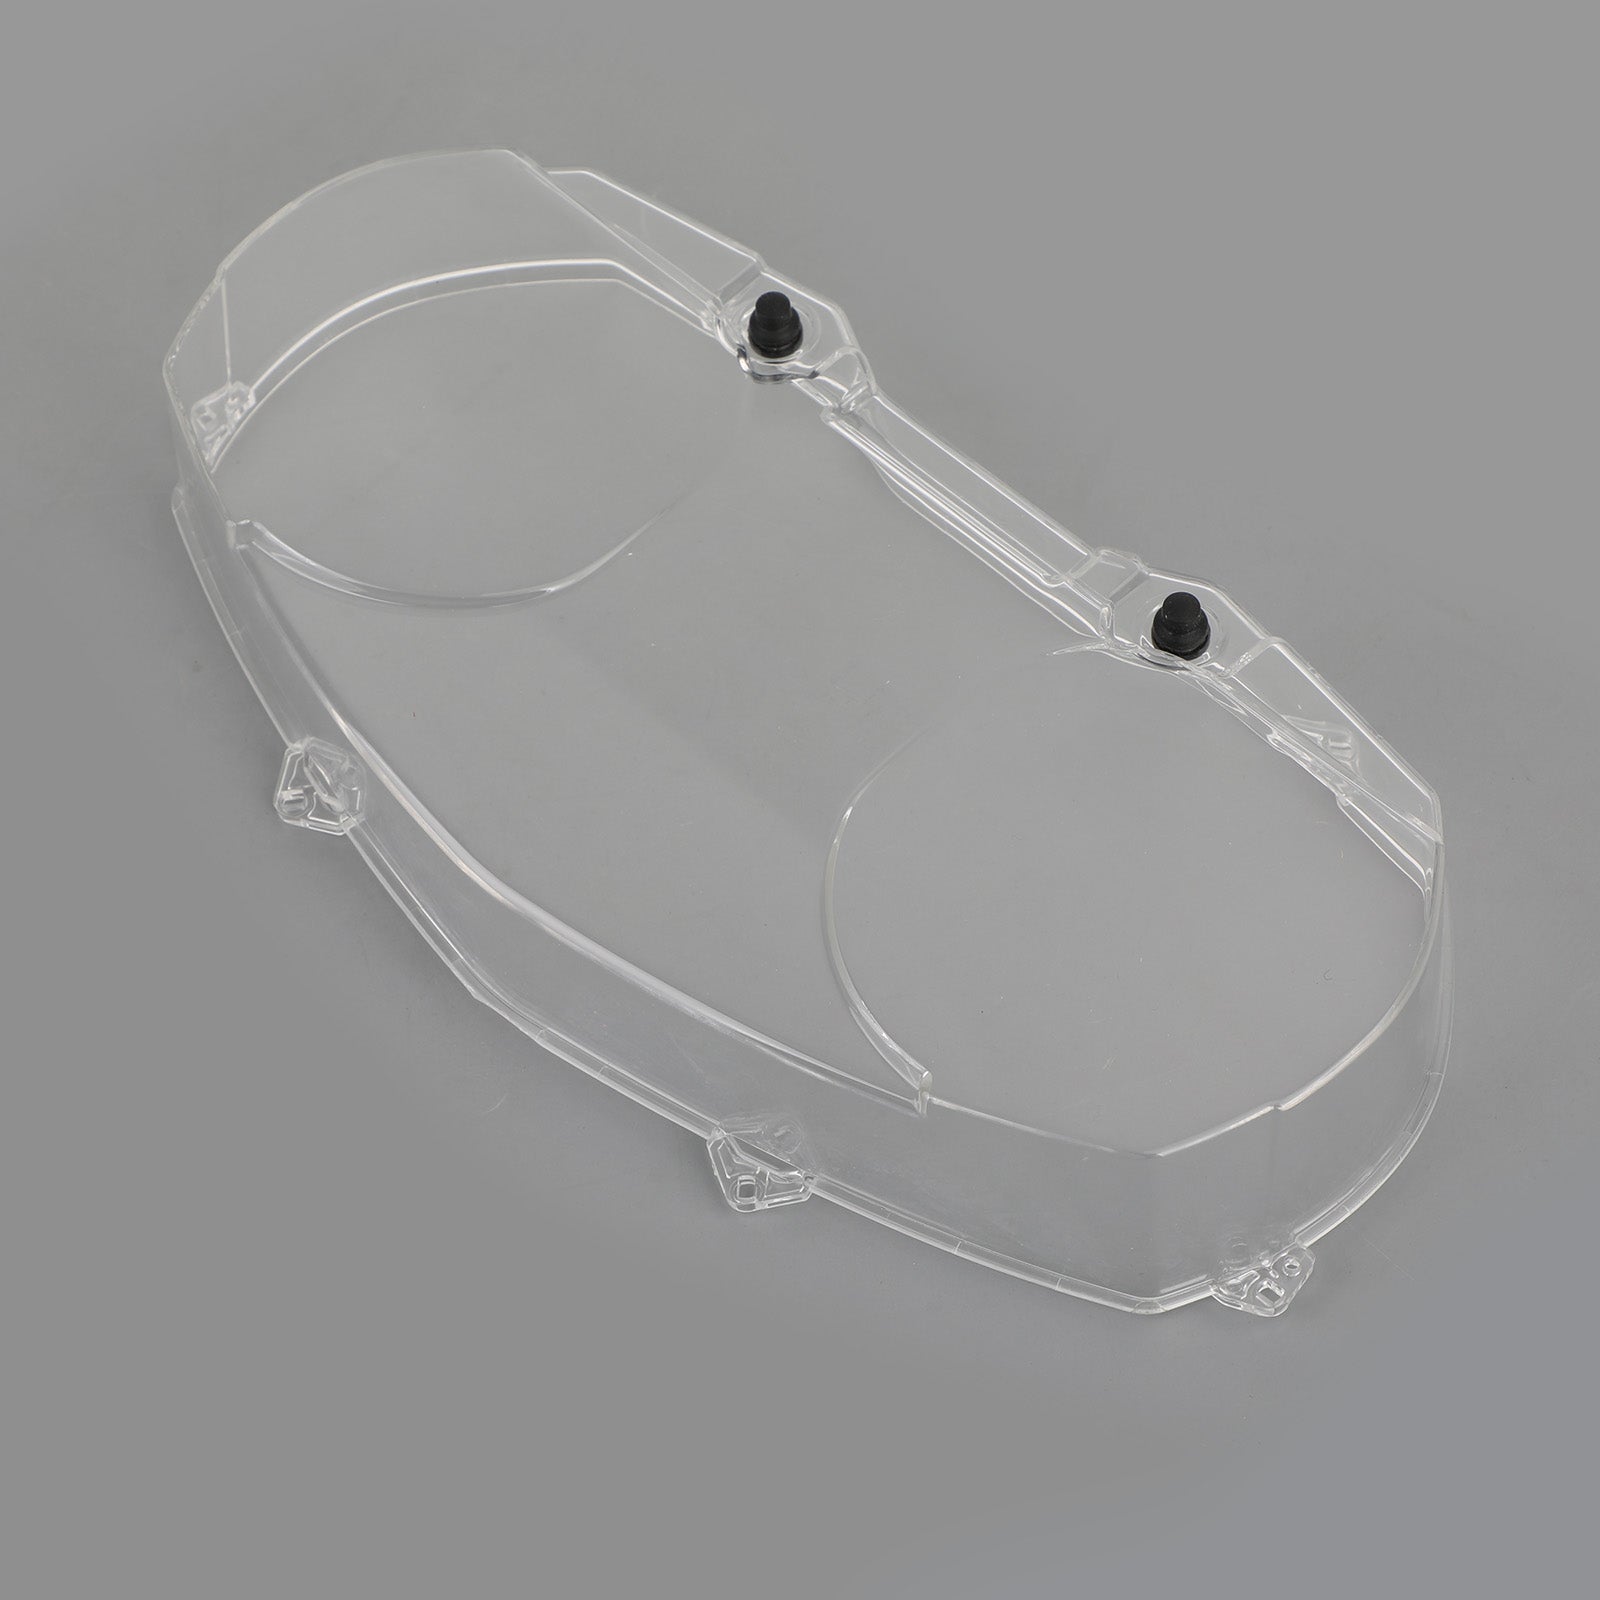 Protecteur de couvercle de compteur de vitesse transparent pour BMW R1200RT 2005-2009 générique